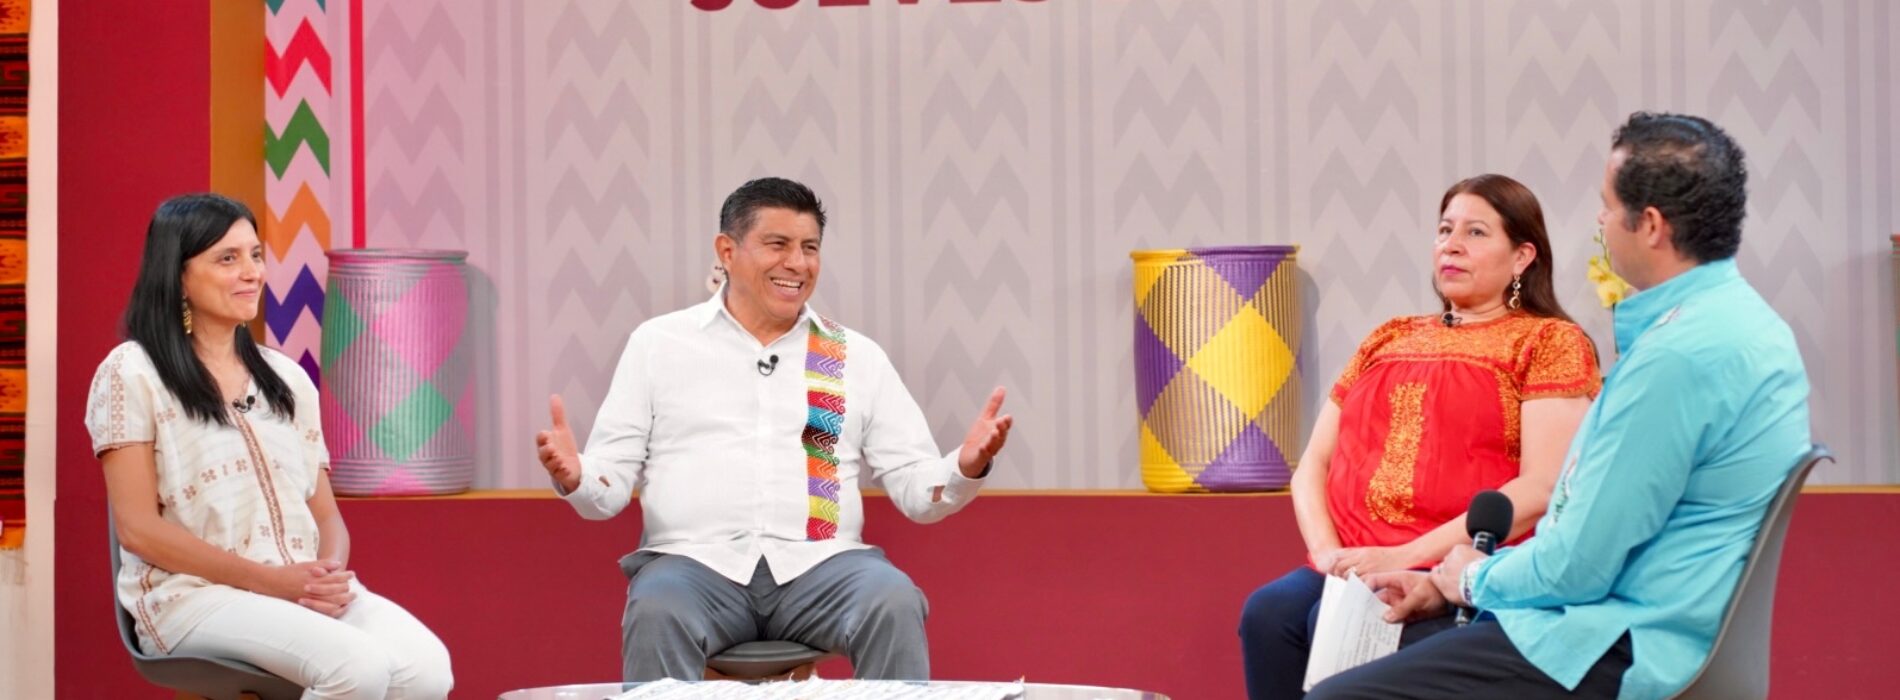 Tendrá Oaxaca bienestar y desarrollo con las inversiones en el Corredor Interoceánico: Gobernador Salomón Jara